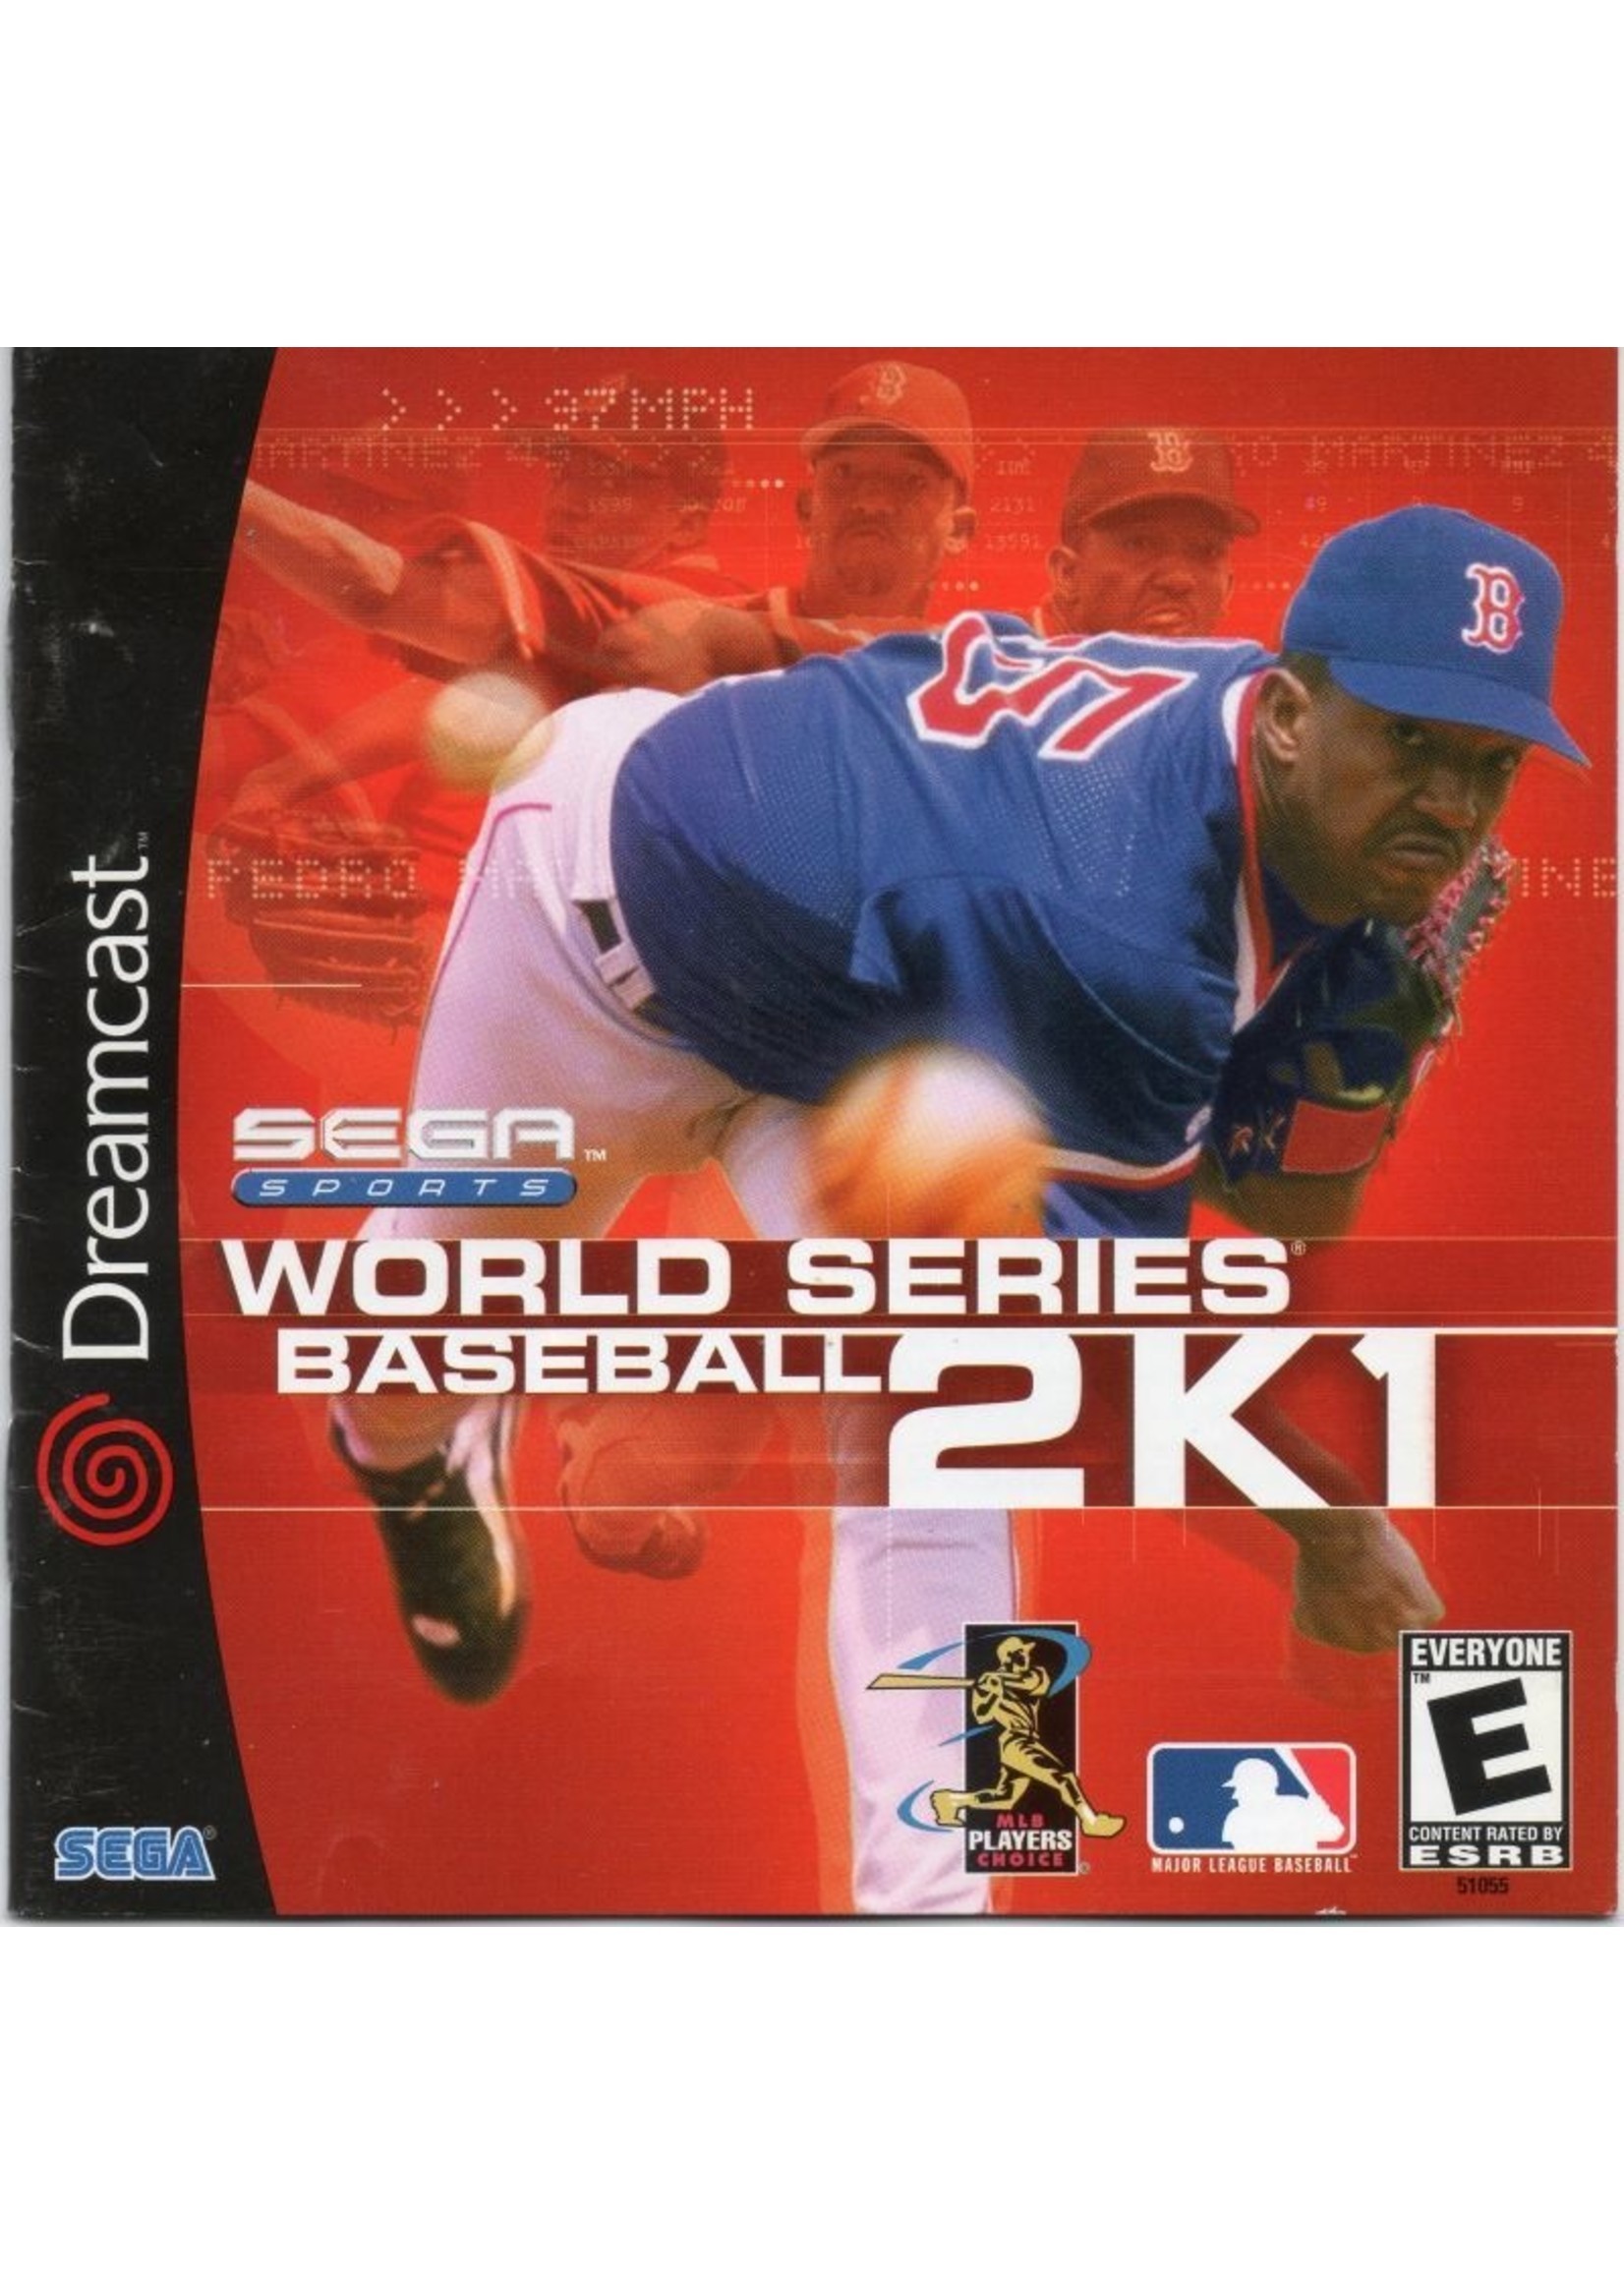 Sega Dreamcast World Series Baseball 2K1